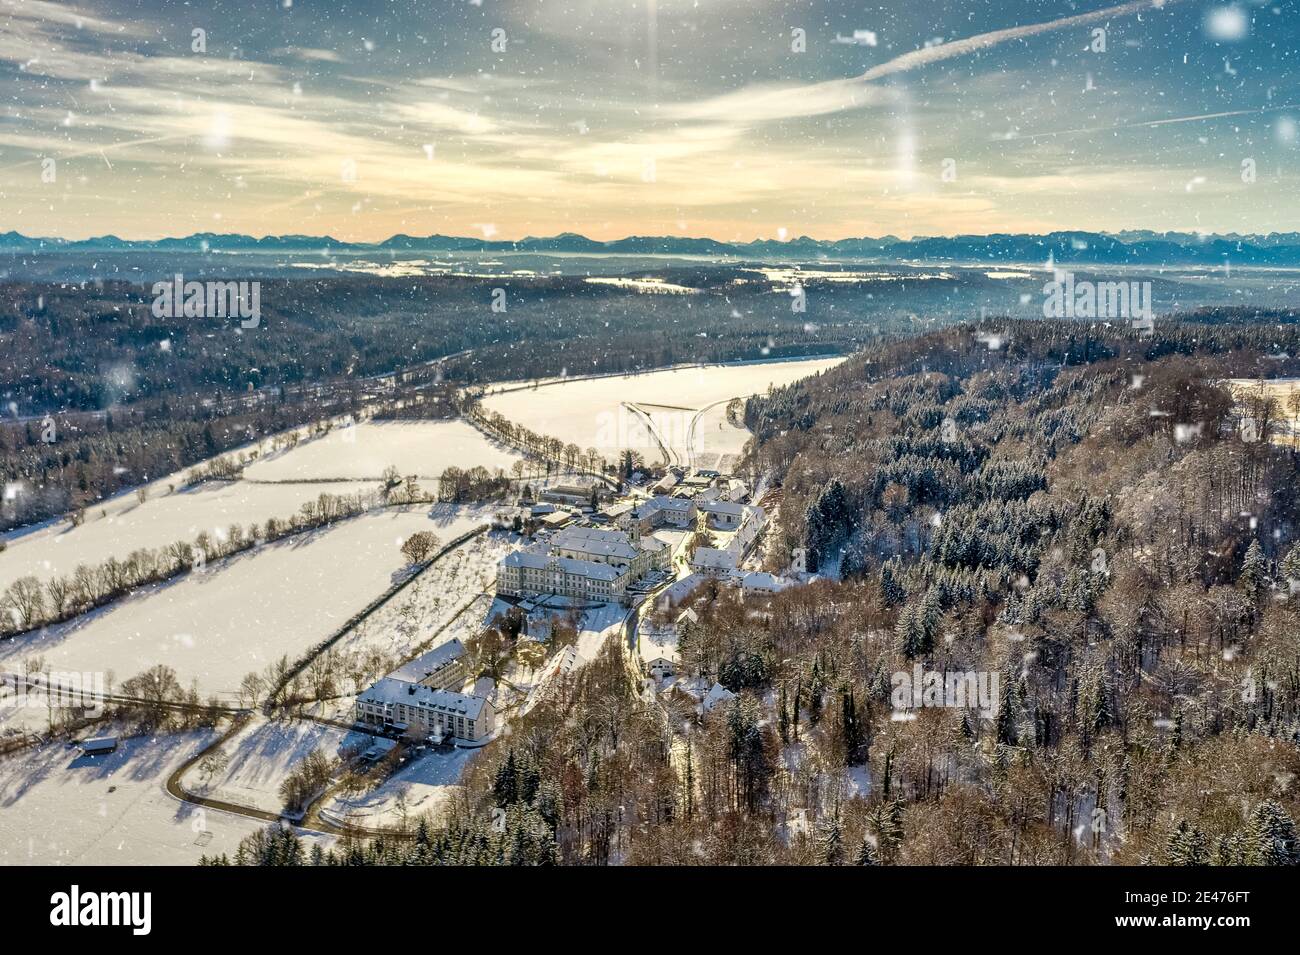 Vista invernale in un monastero tradizionale come punto di ritrovo turistico in baviera in condizioni nevose catturato da un drone con le montagne alp sullo sfondo Foto Stock